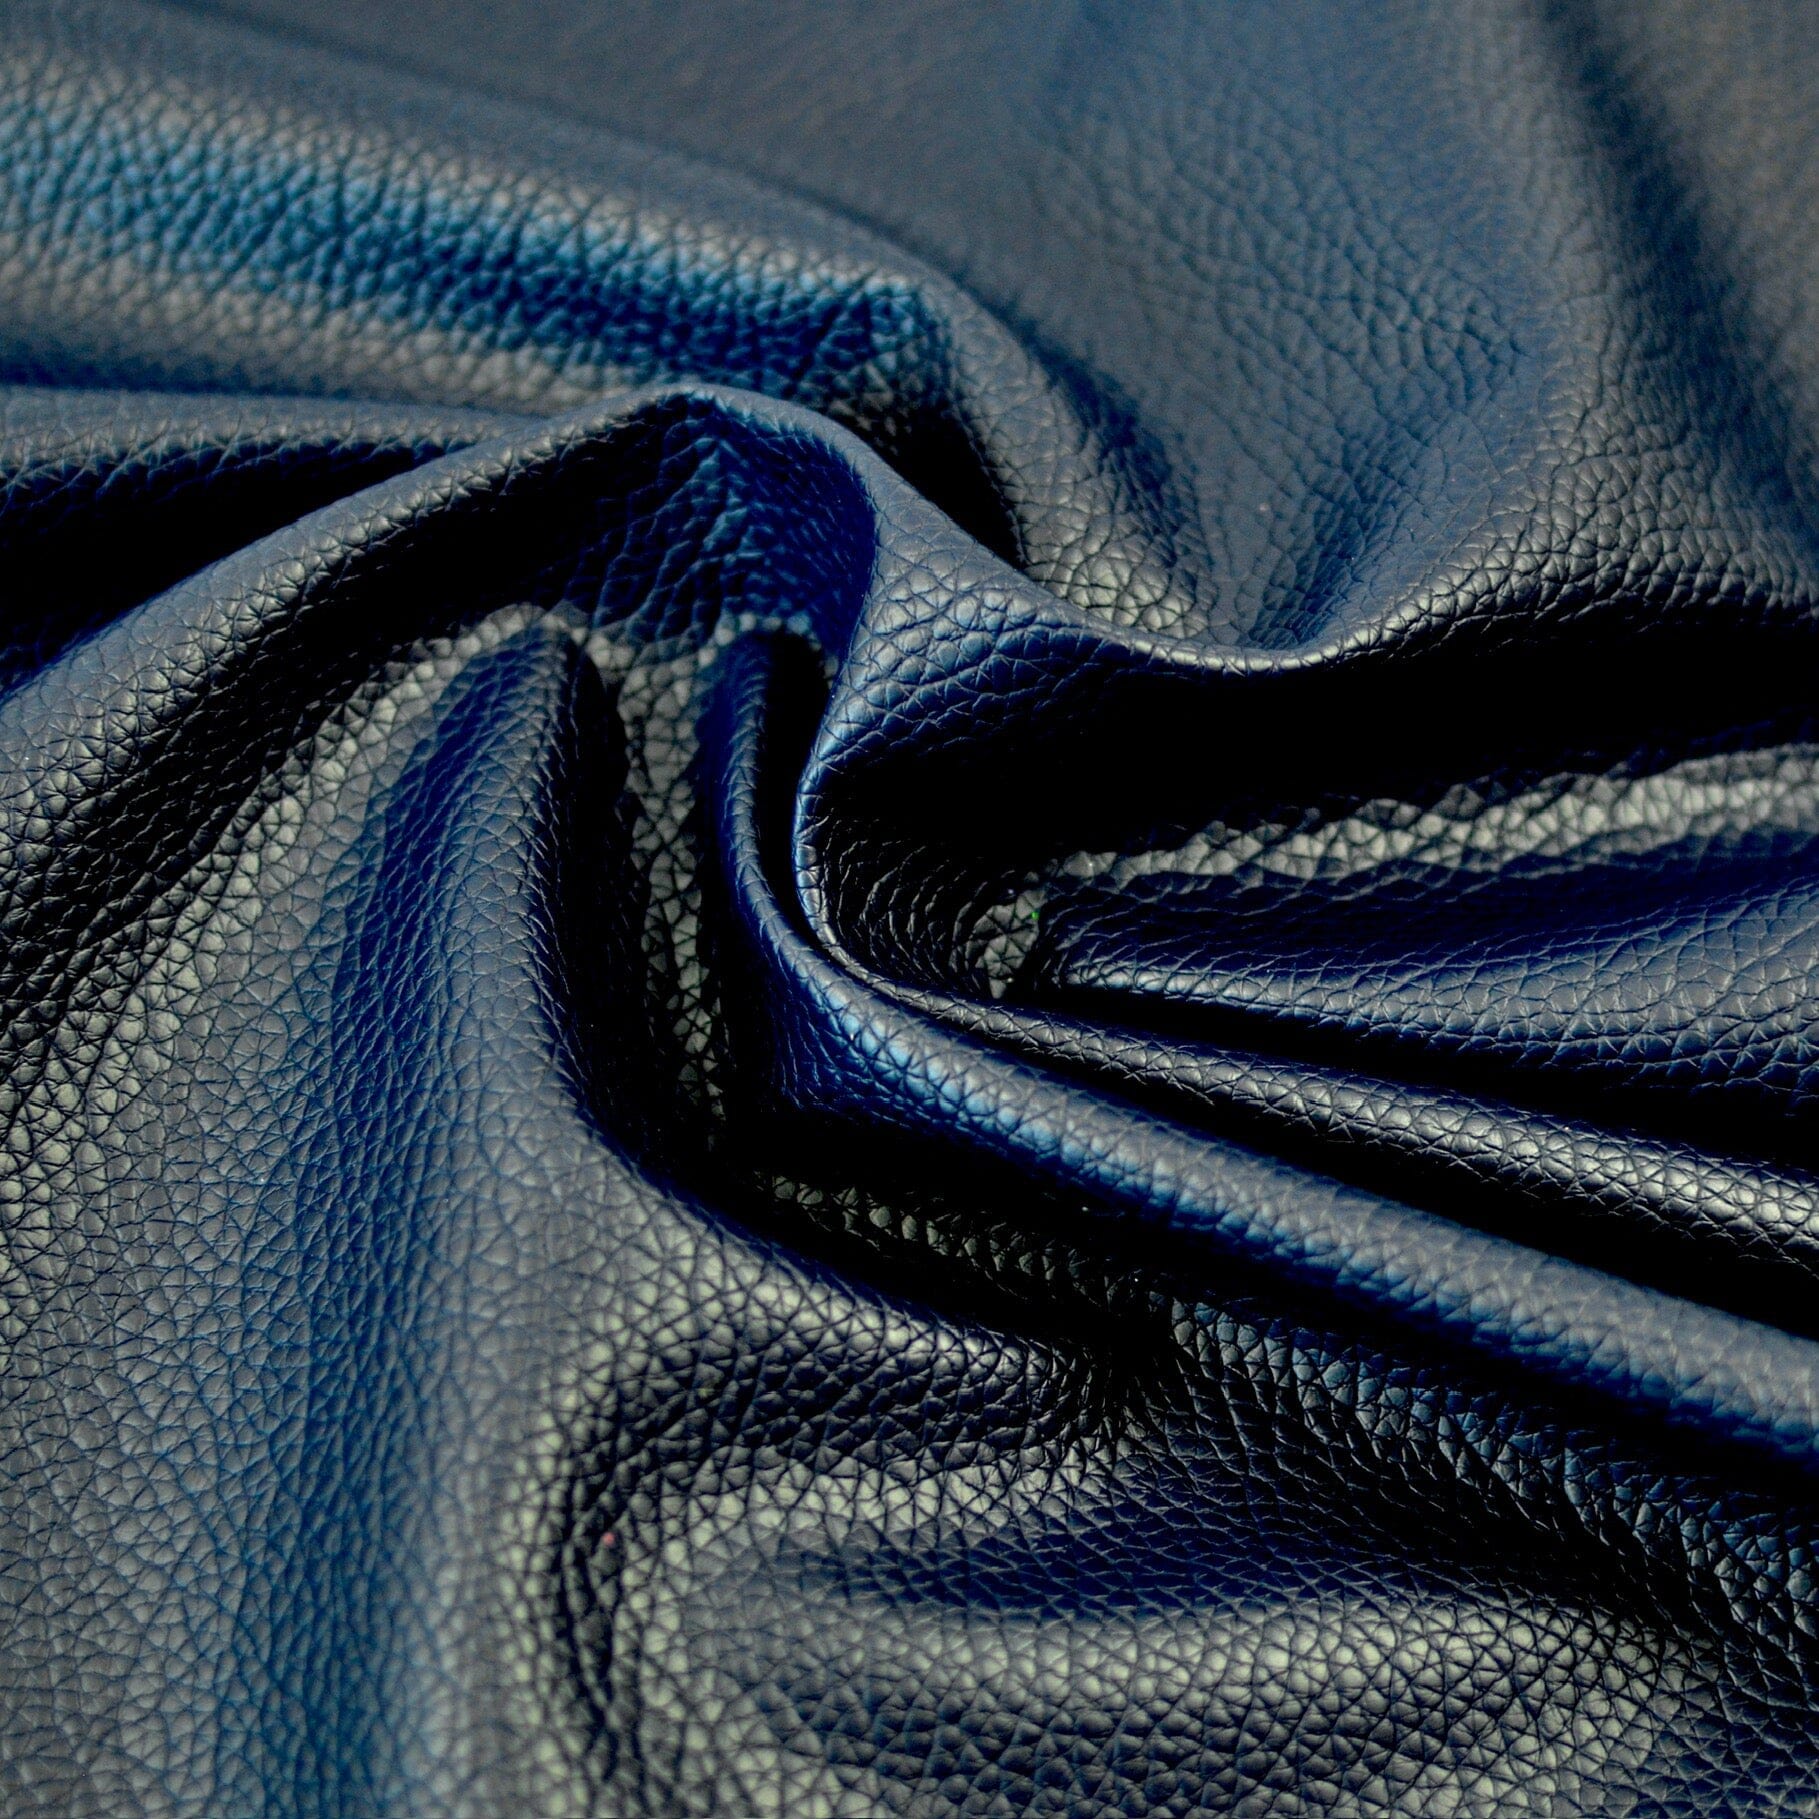 Abschnitt 50x70cm Kunstleder schwer - dunkelblau Fabric poshpinks